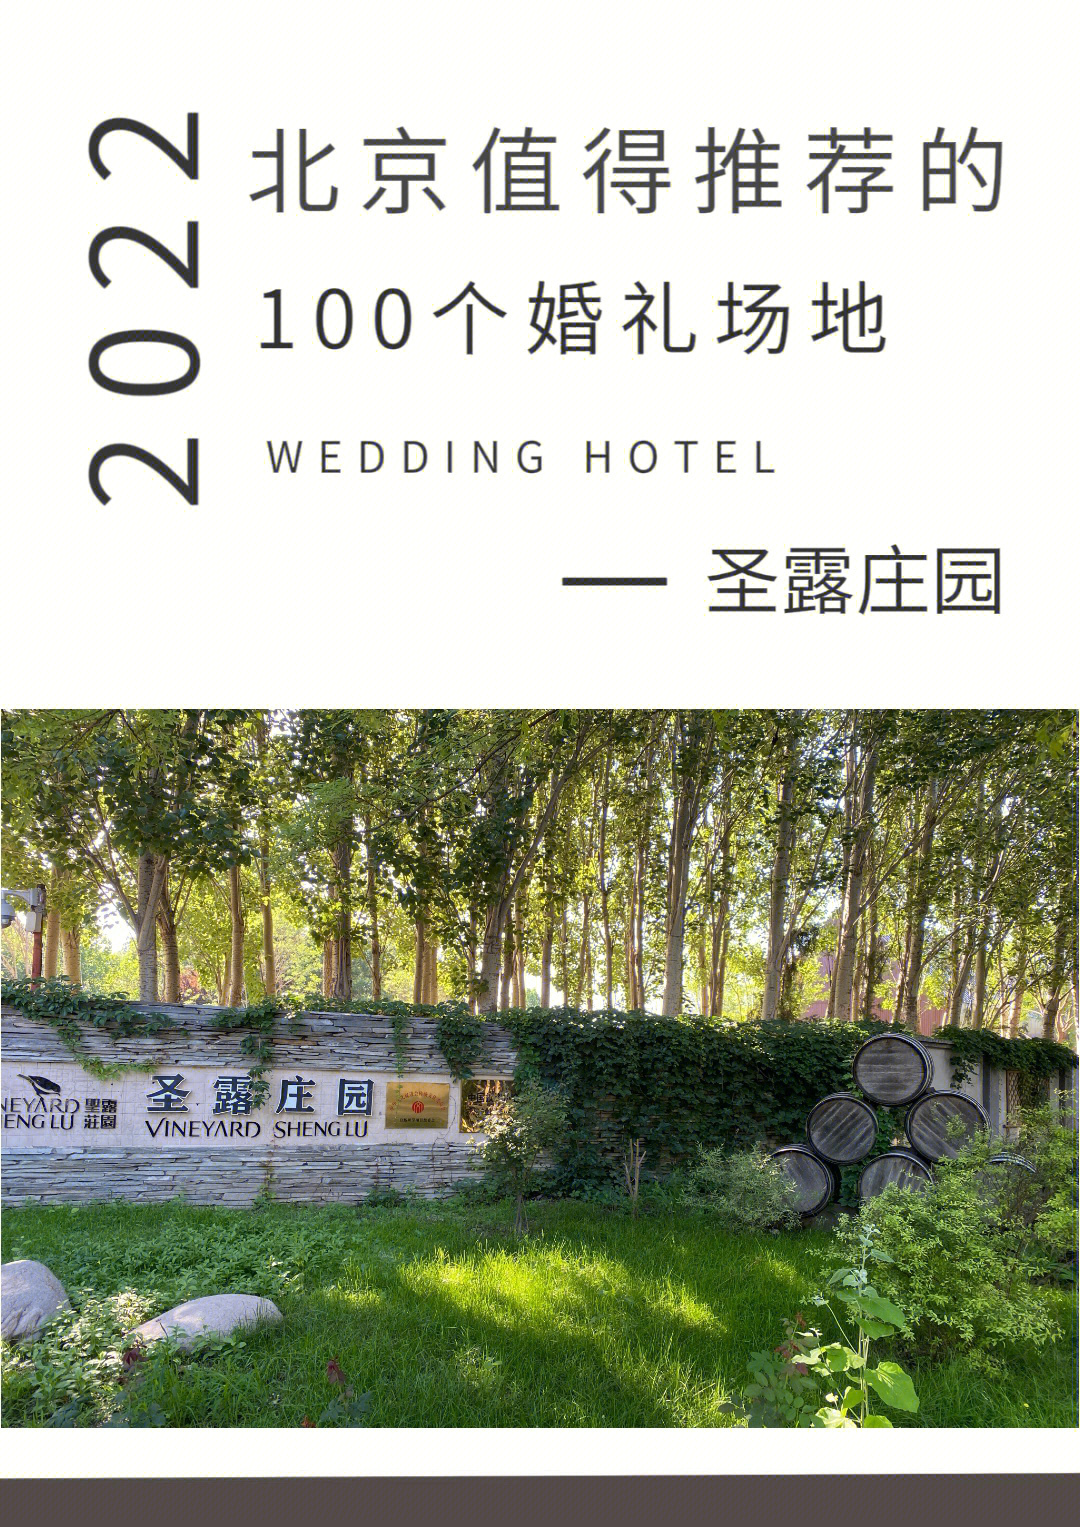 北京值得推荐的100个婚礼场地圣露庄园